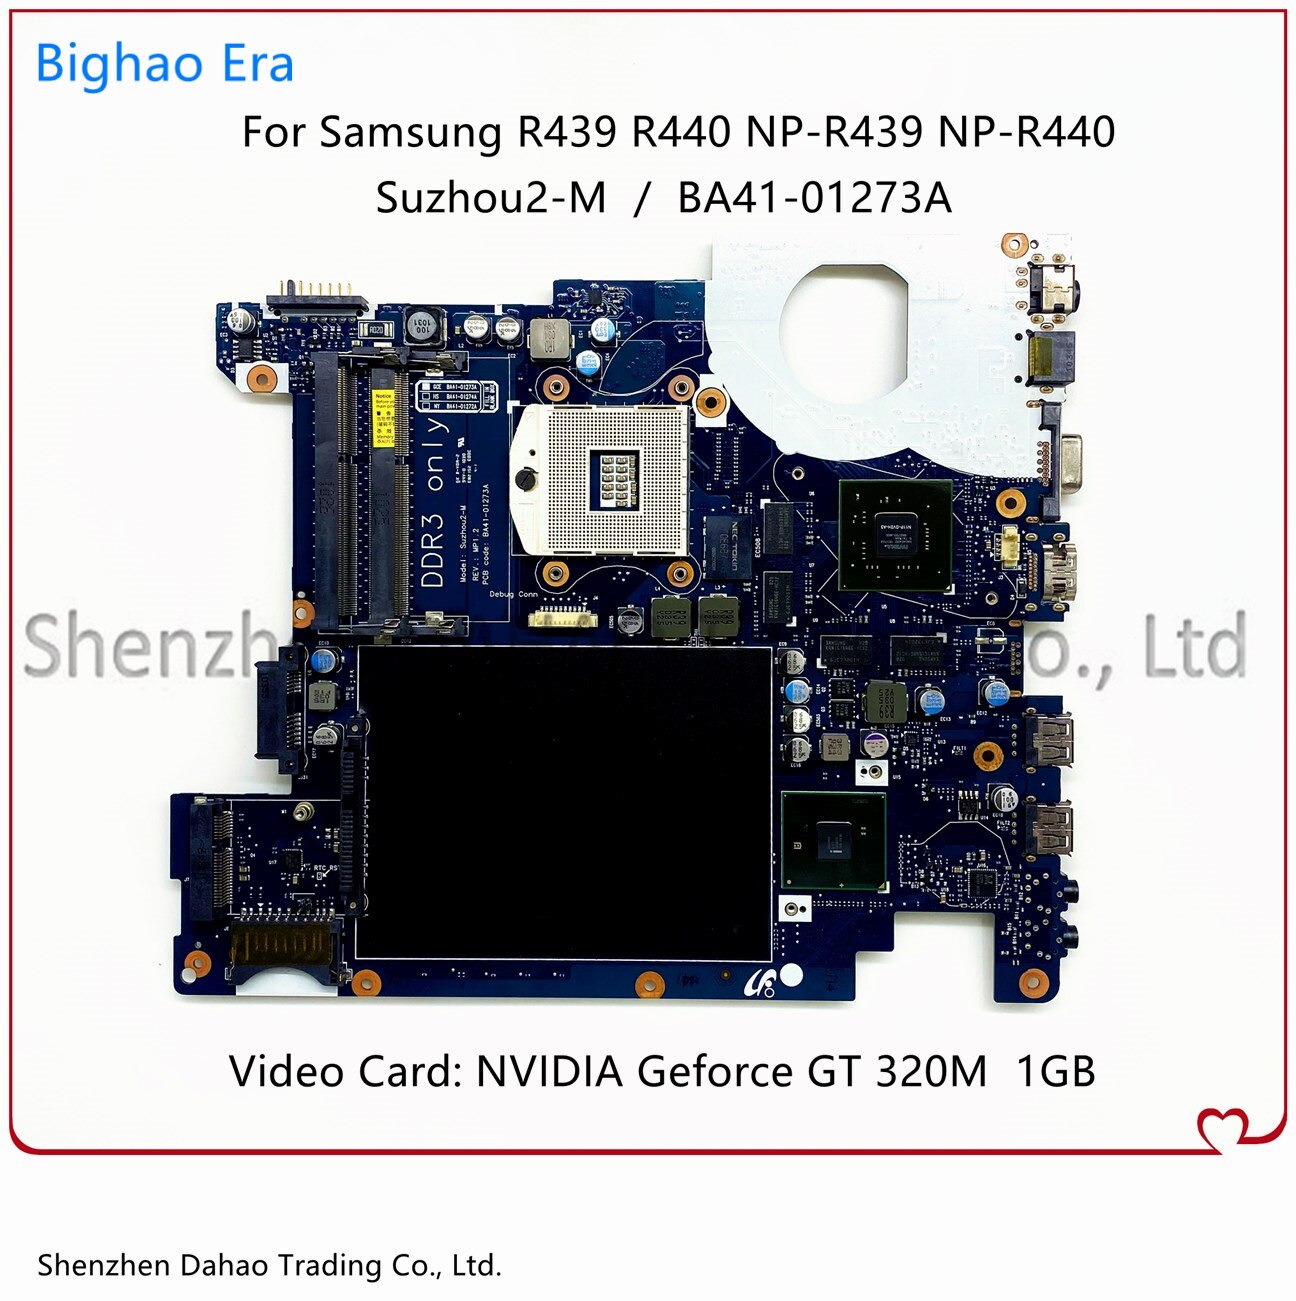 Pour Samsung NP-R439 R440 R439 Ordinateur Portable Carte Mère BA41-01273A Suzhou2-M Avec GT320M 1GB-GPU BA92-06385A BA92-06385B 100% Testé